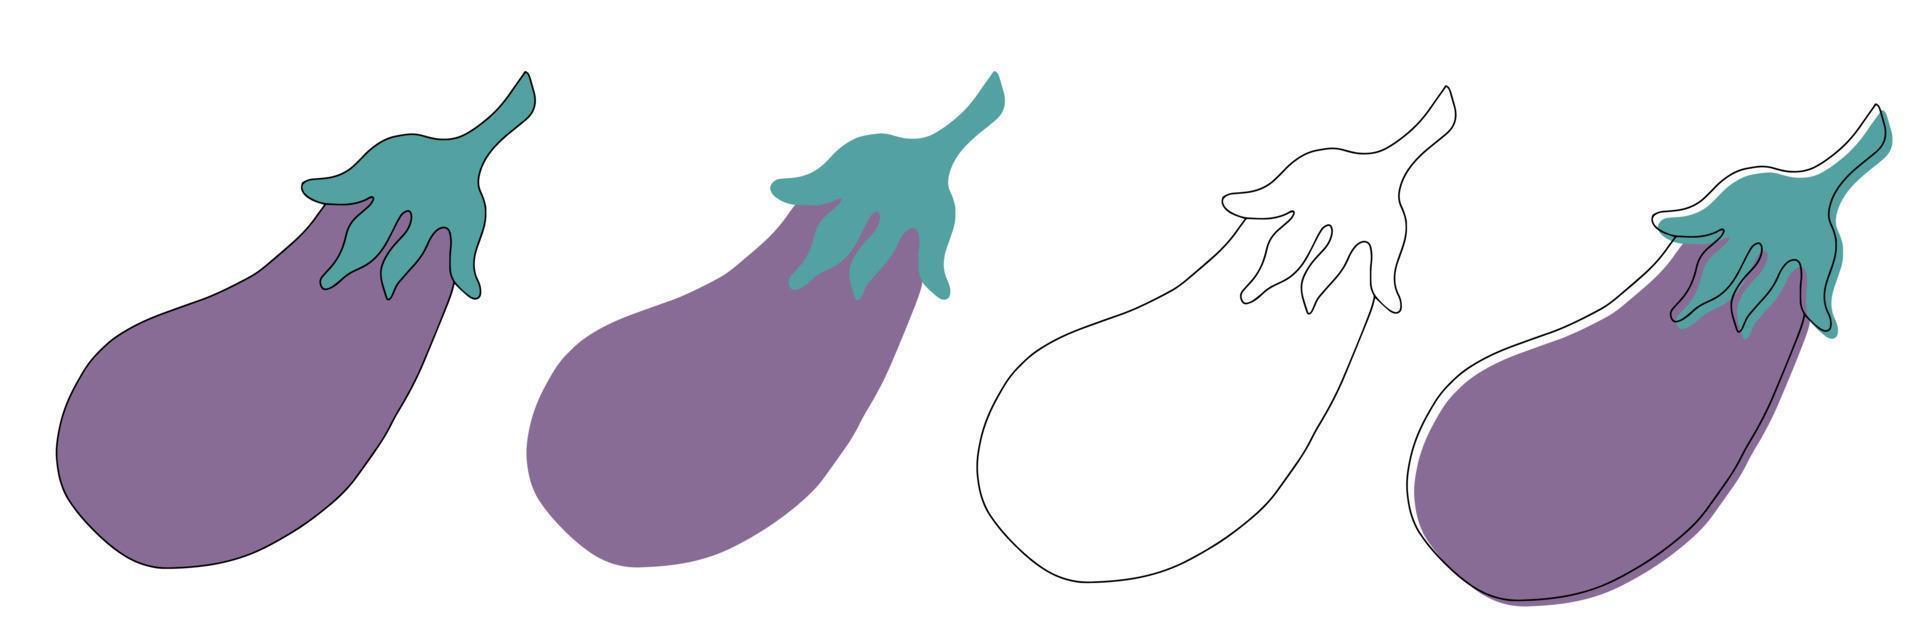 vegetal de berenjena, boceto aislado de berenjena. verdura púrpura vectorial, fruta comestible de berenjena entera. berenjena de dibujos animados vector